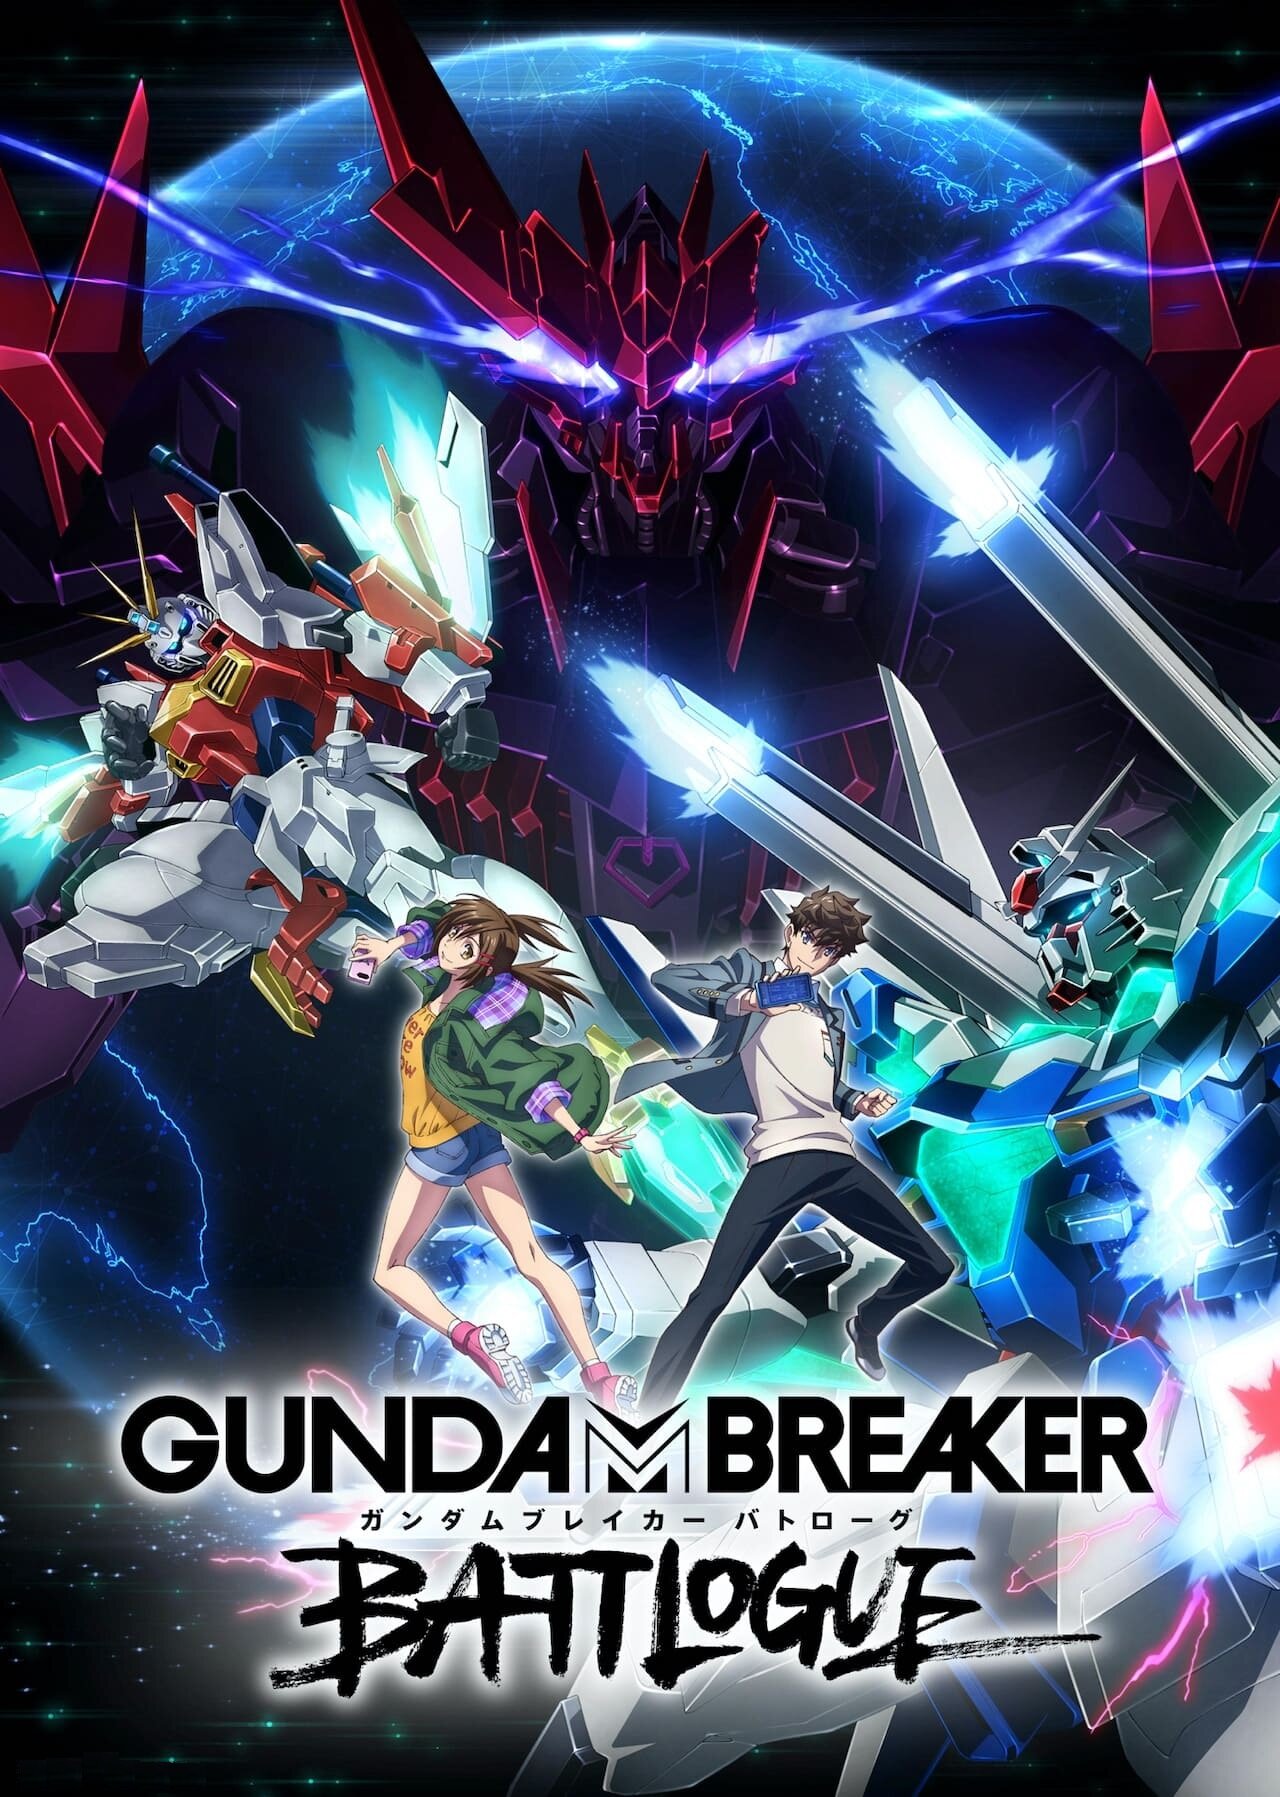 Gundam Breaker: Battlogue ne zaman